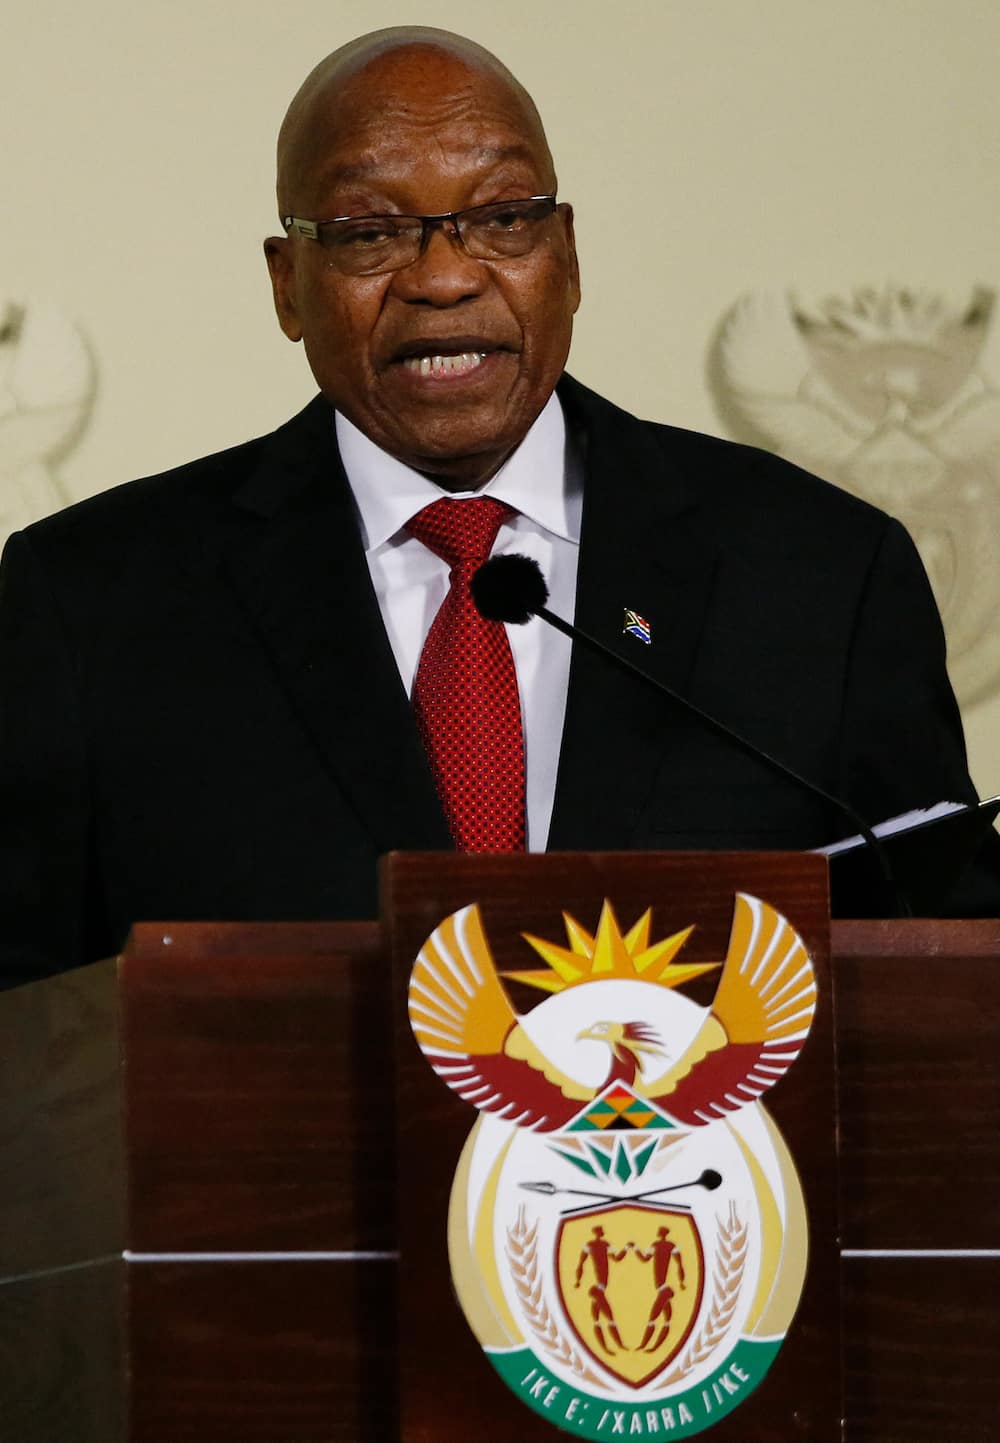 Edward Zuma's latest news